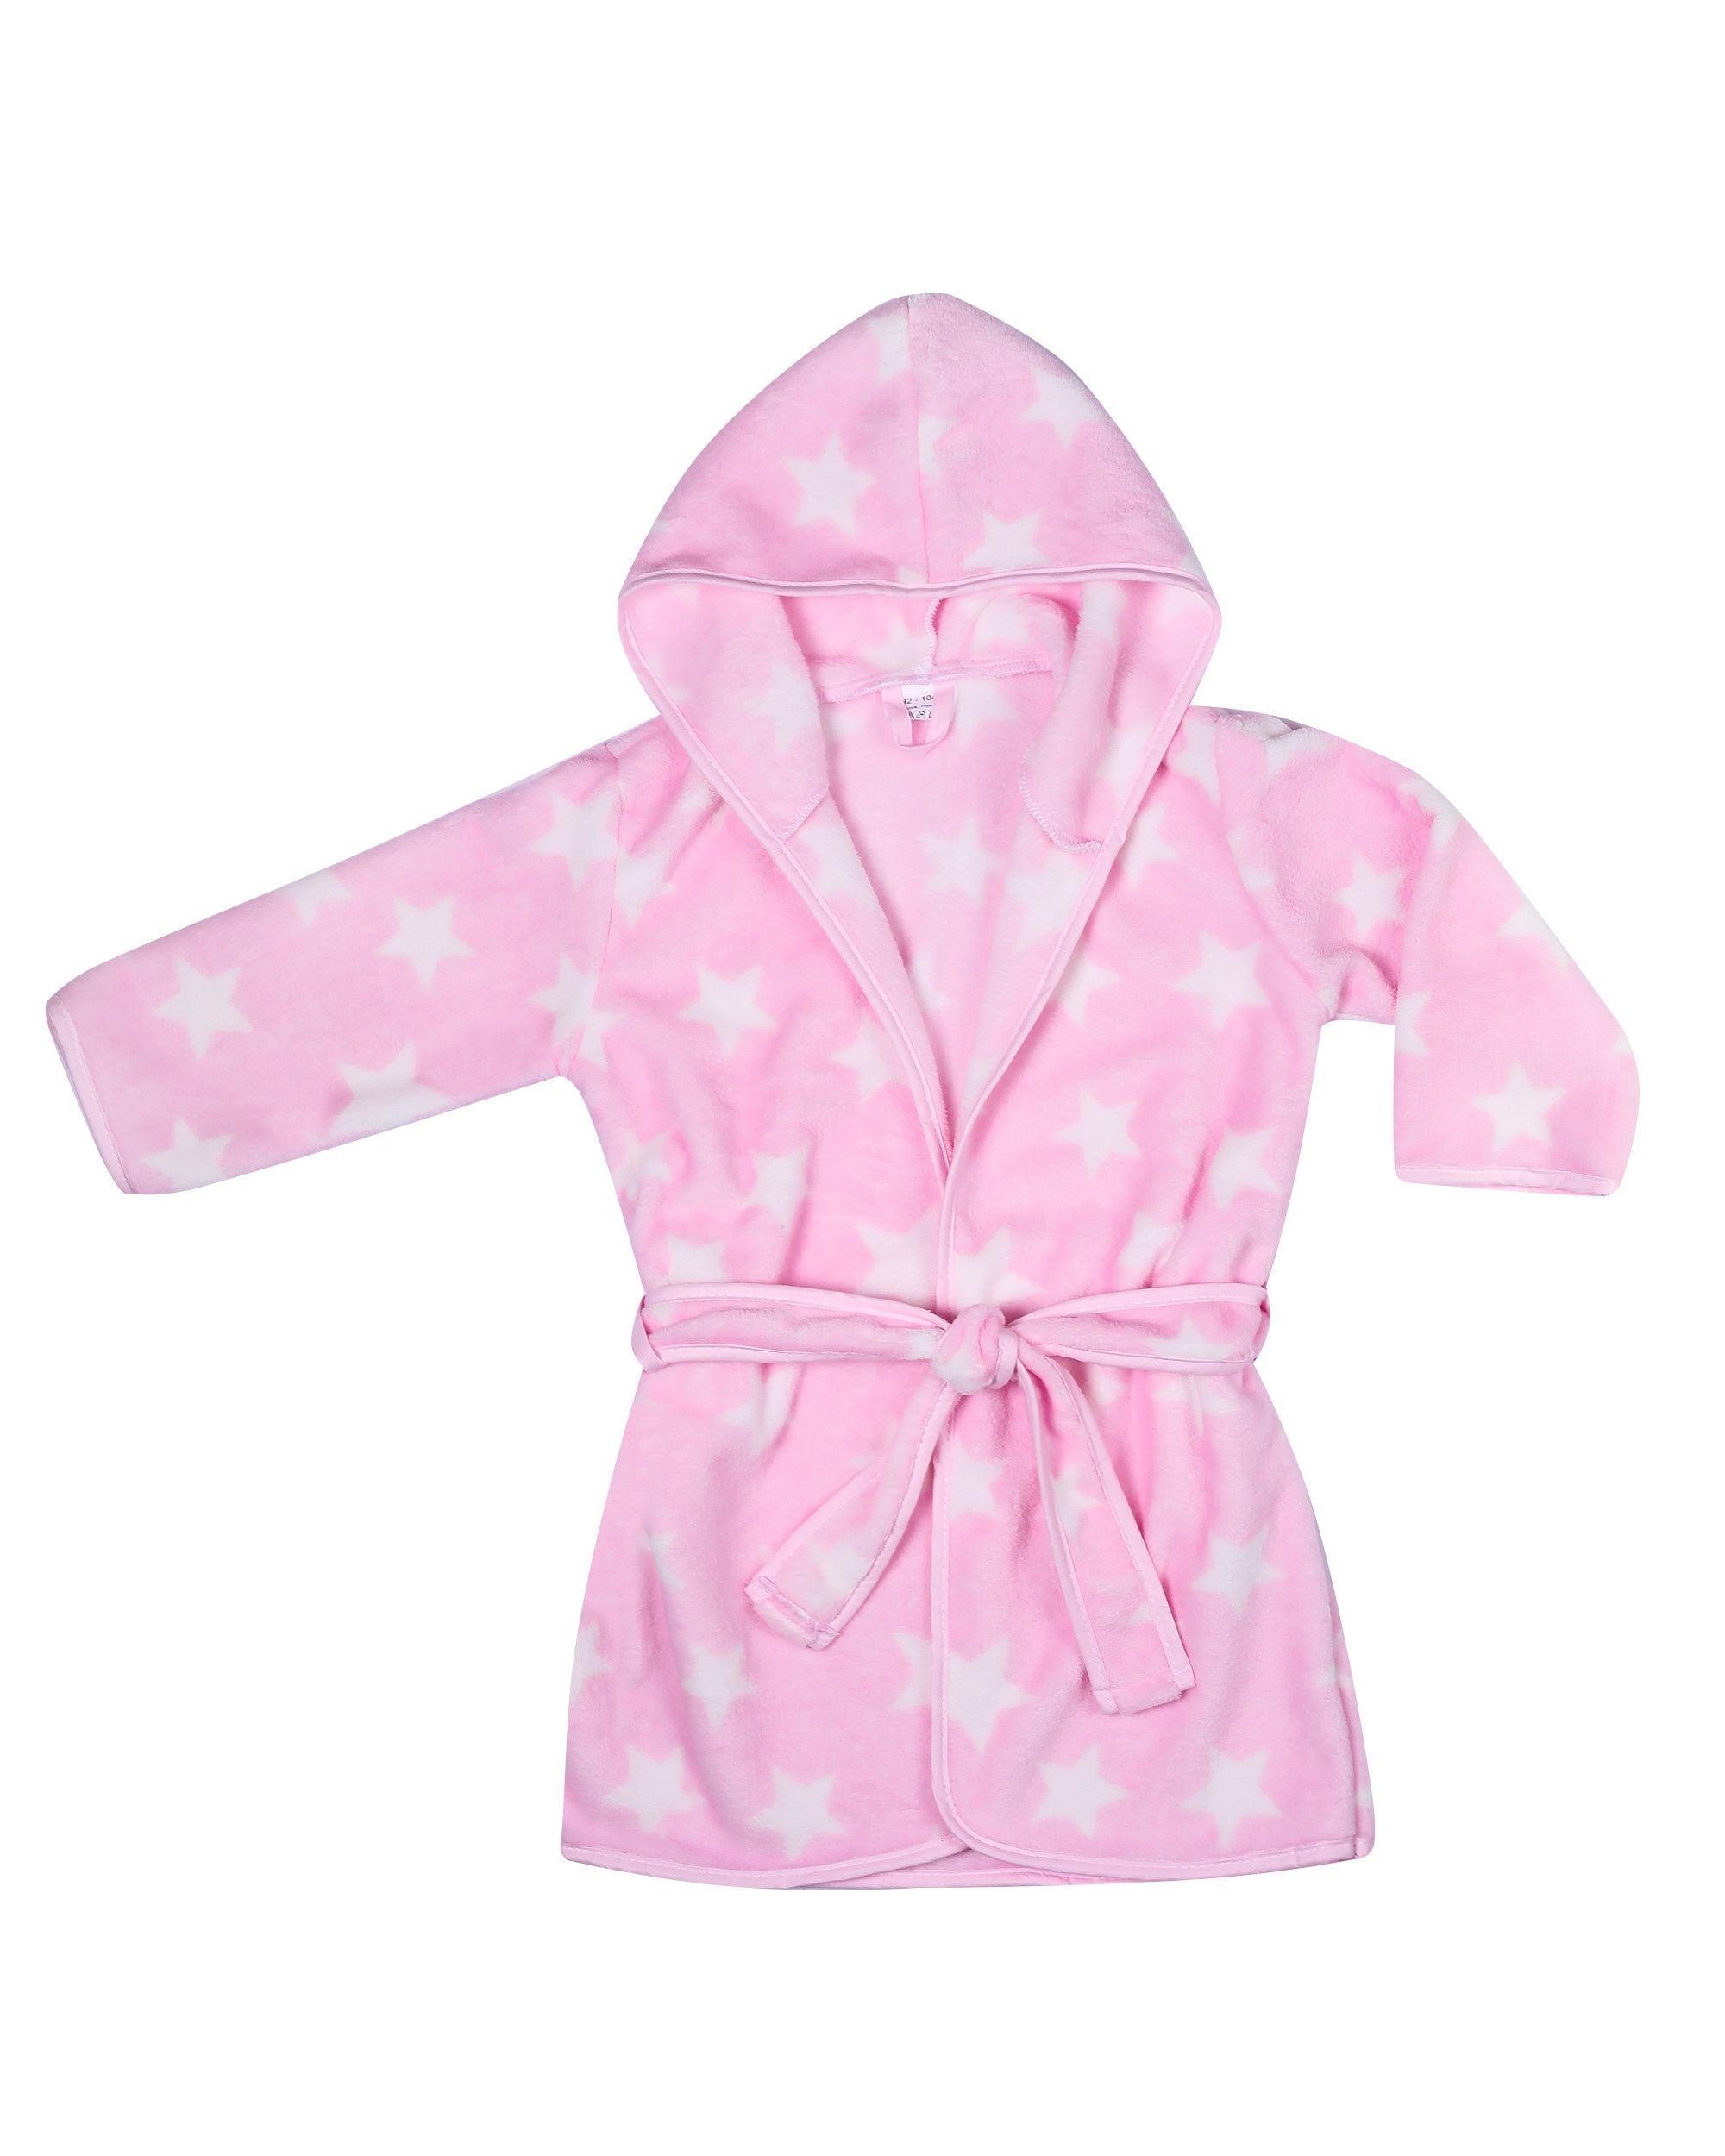 Children's bathrobe size 116/122 - pink in stars